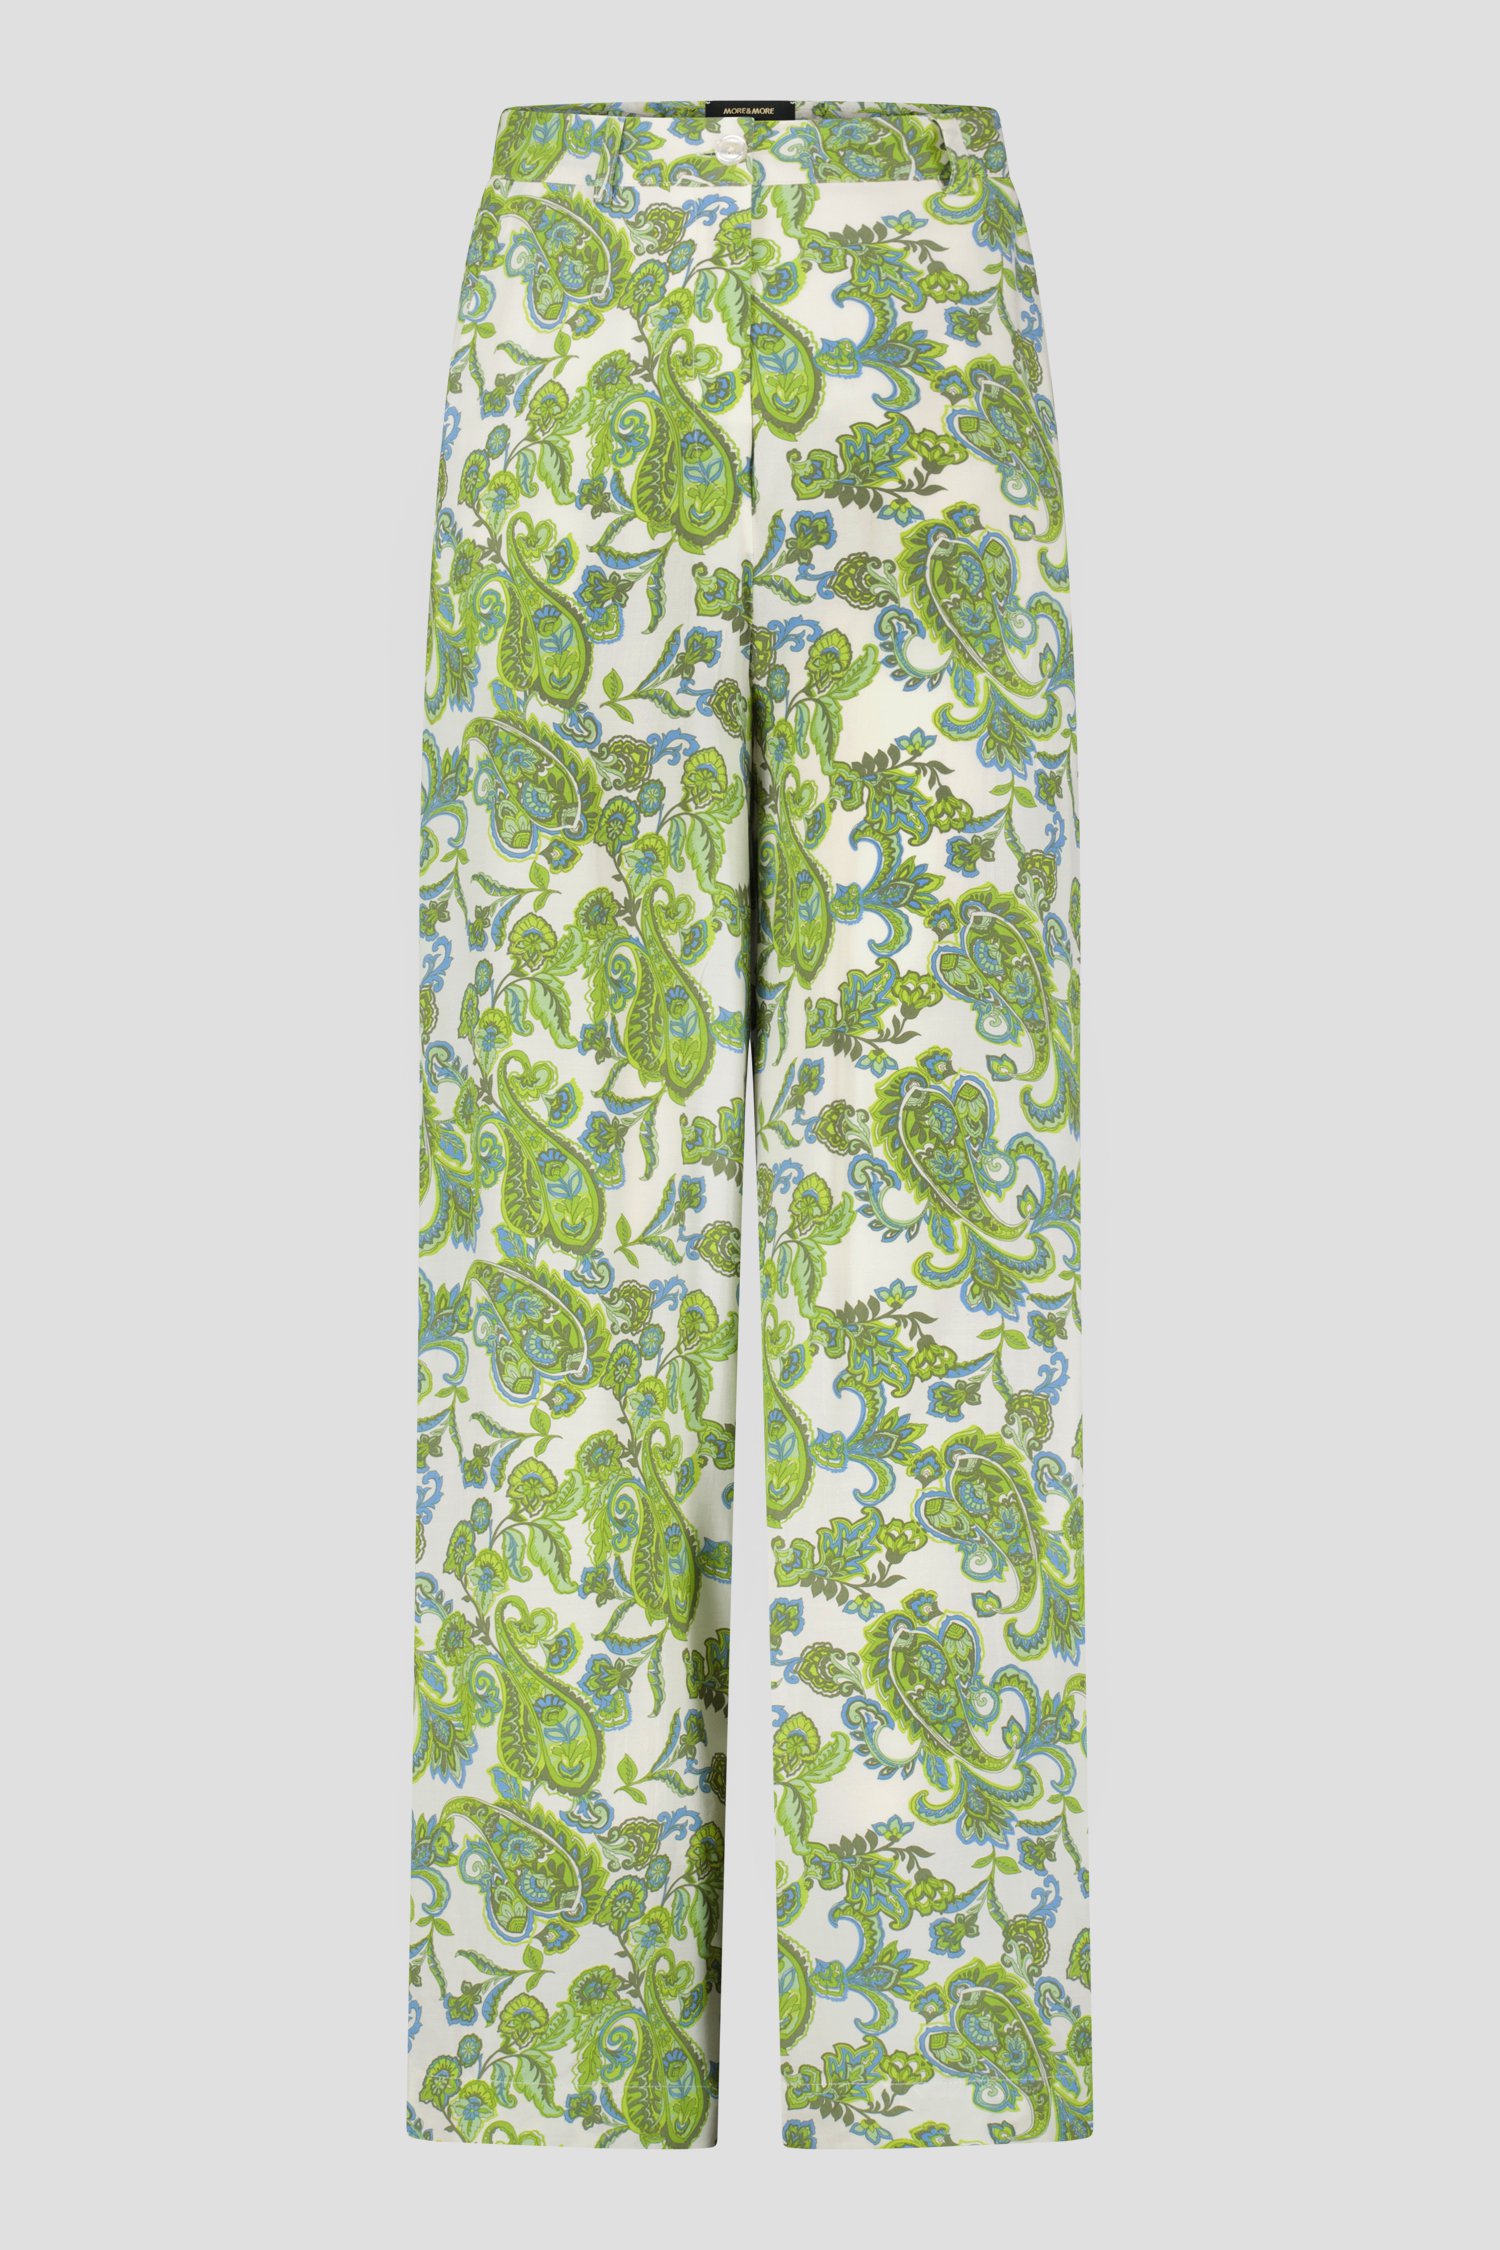 Wijde broek met groen-blauwe paisley print van More & More voor Dames